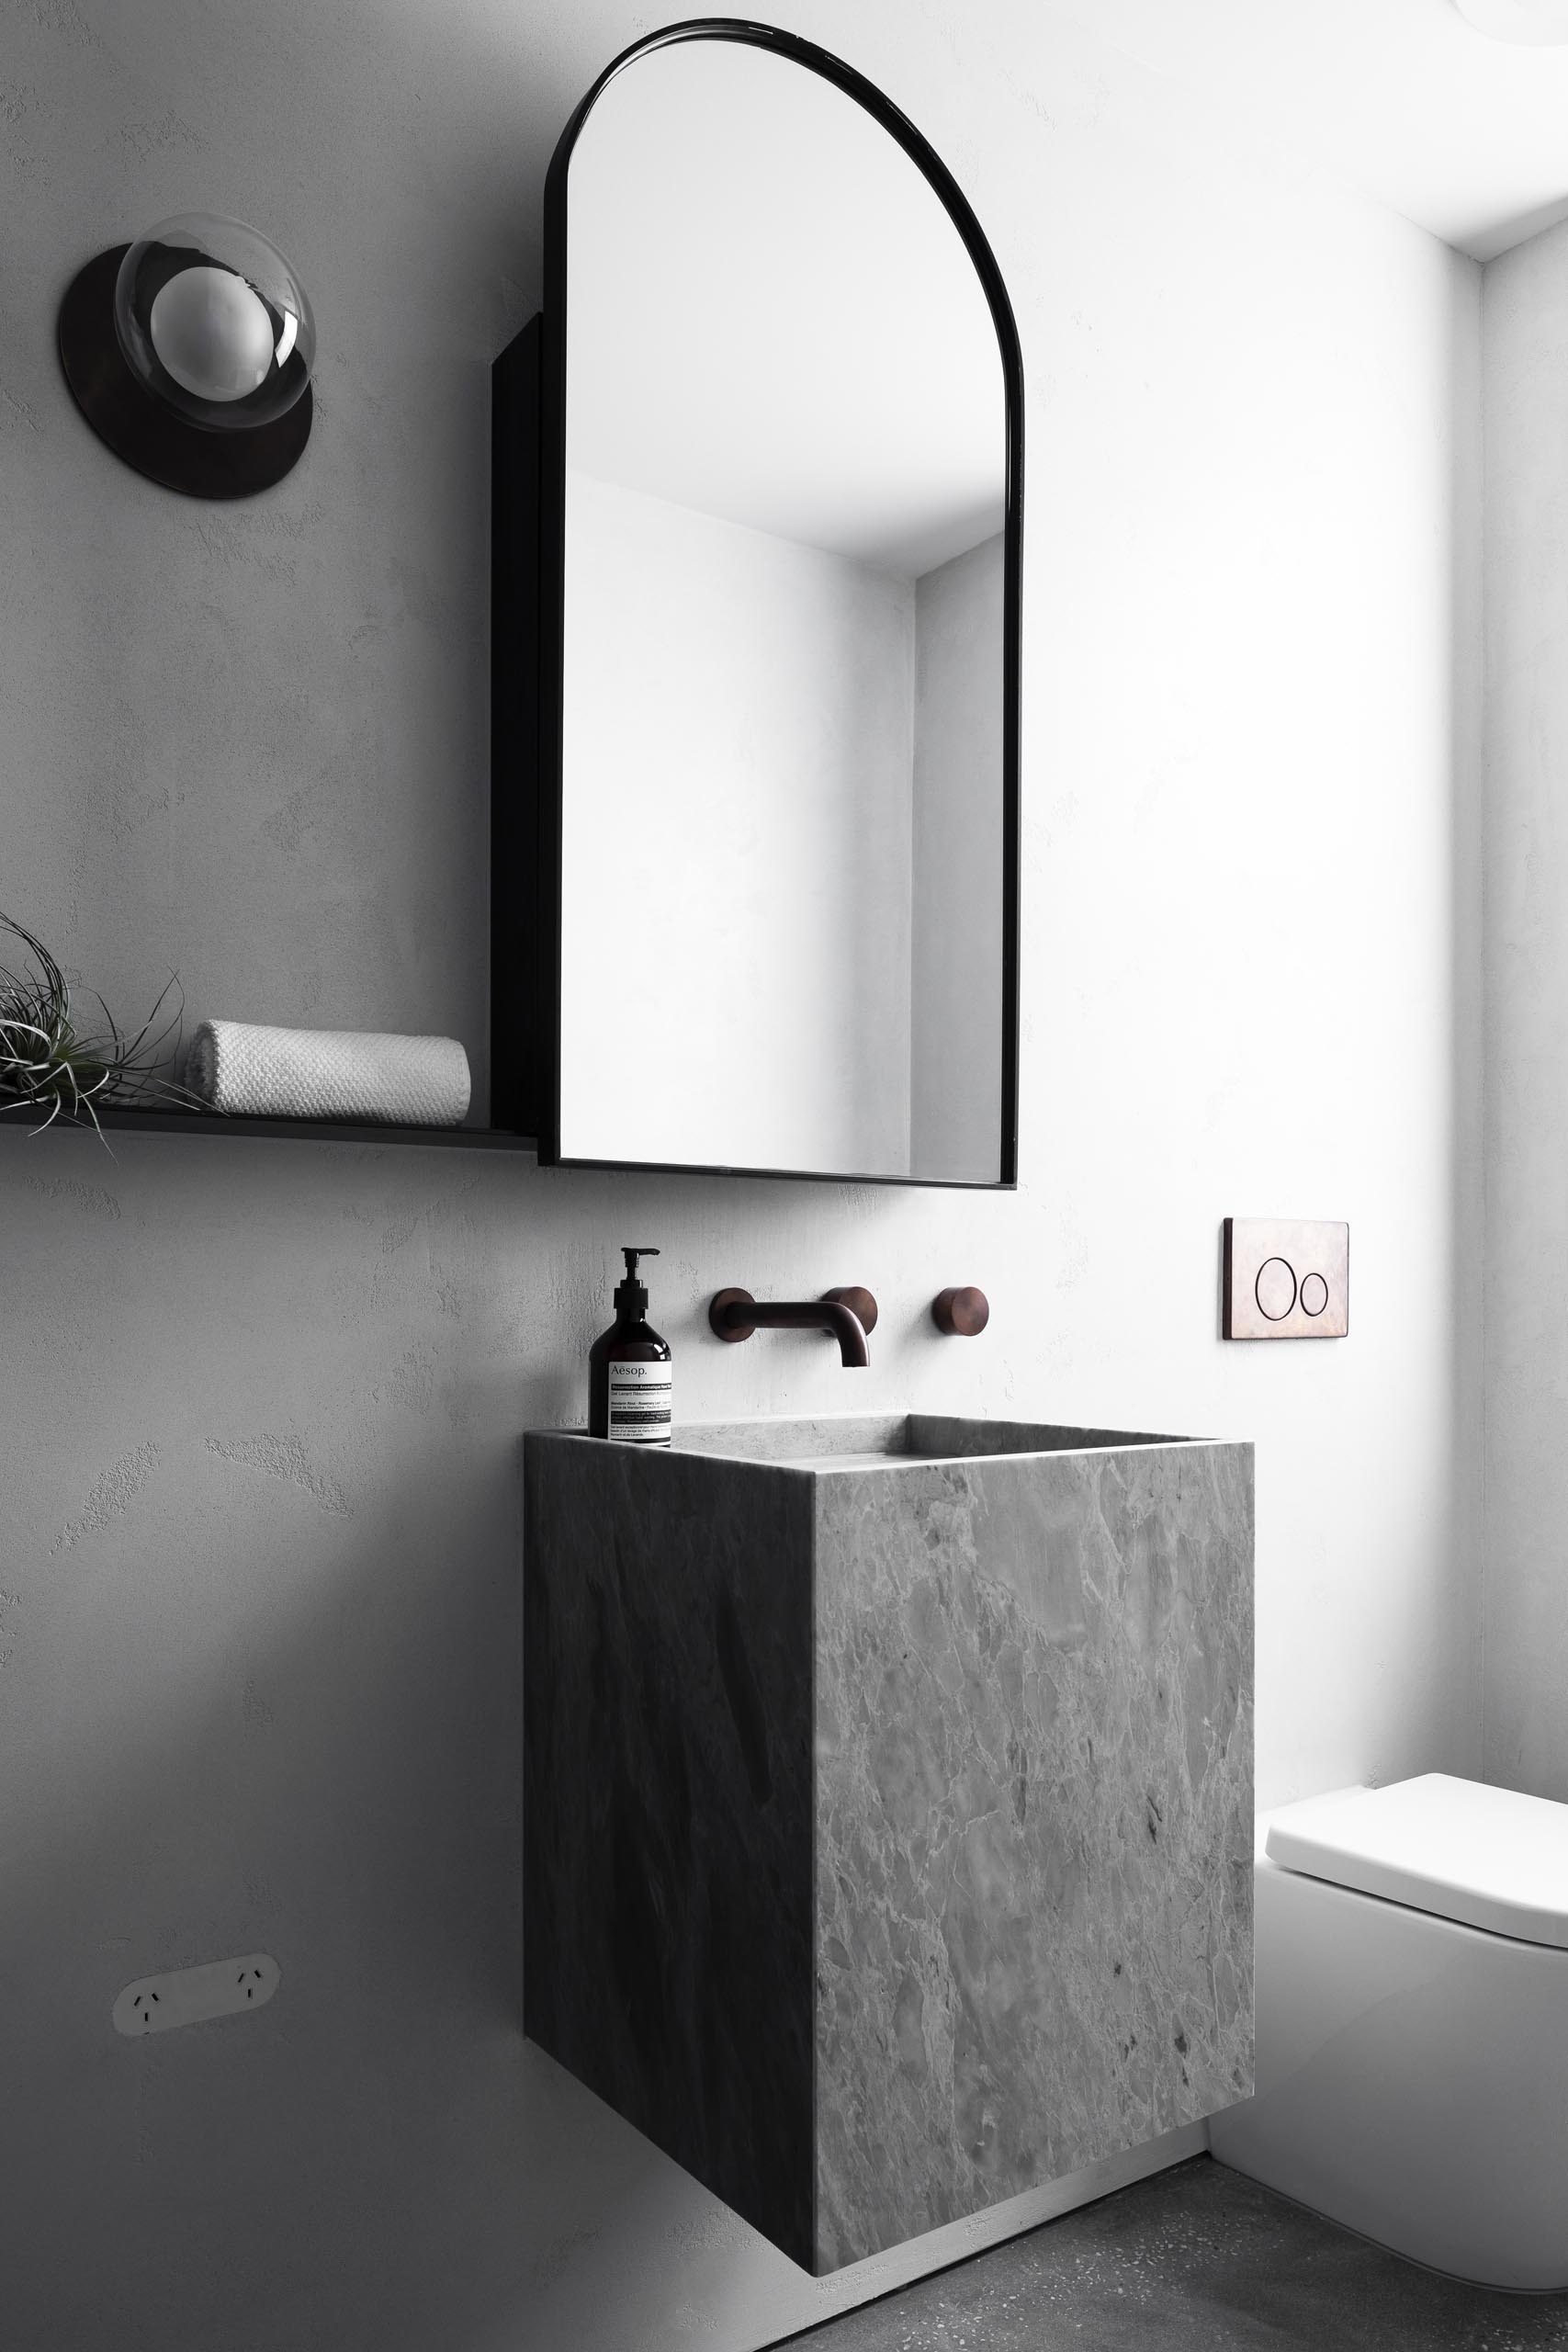 Серая ванная комната с арочным зеркалом в черной рамке и плавающим туалетным столиком.